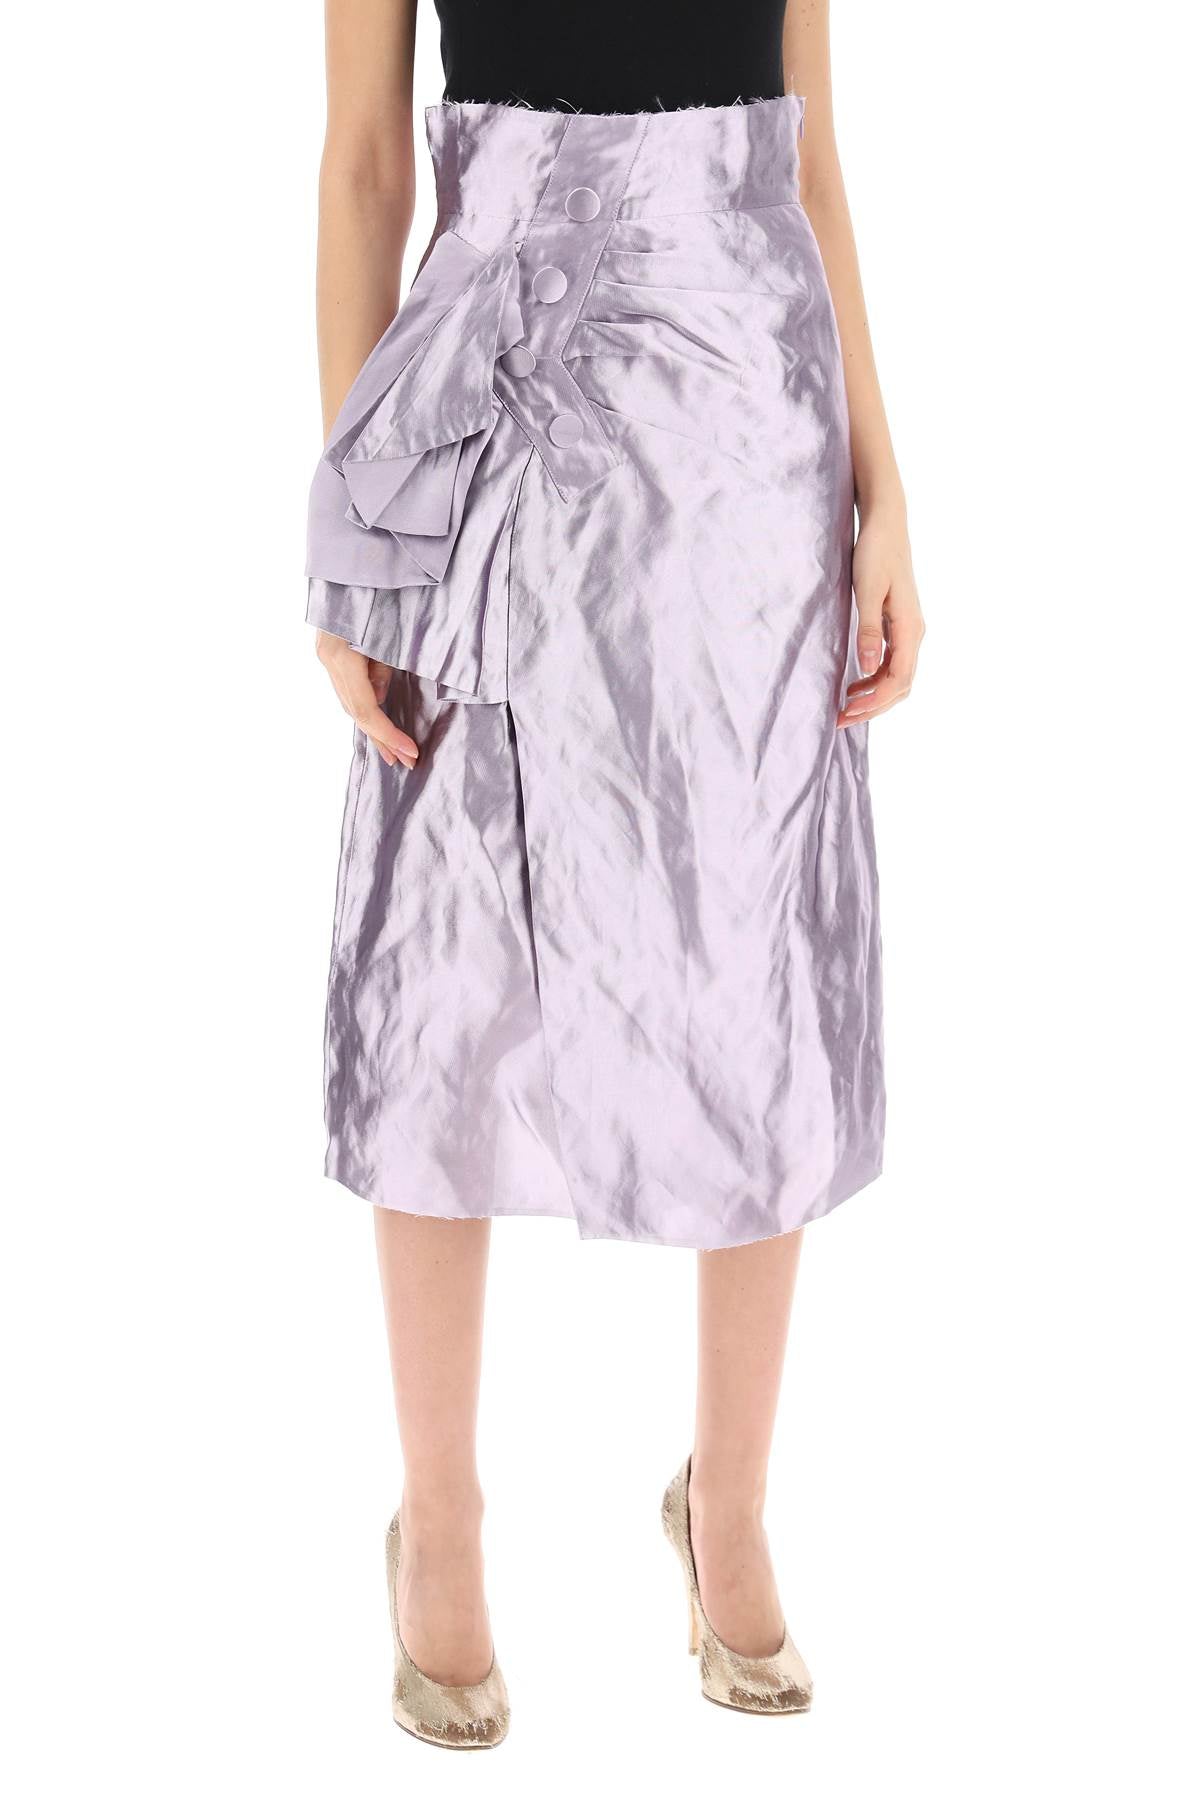 Maison margiela "metallic satin midi wrap skirt with-1